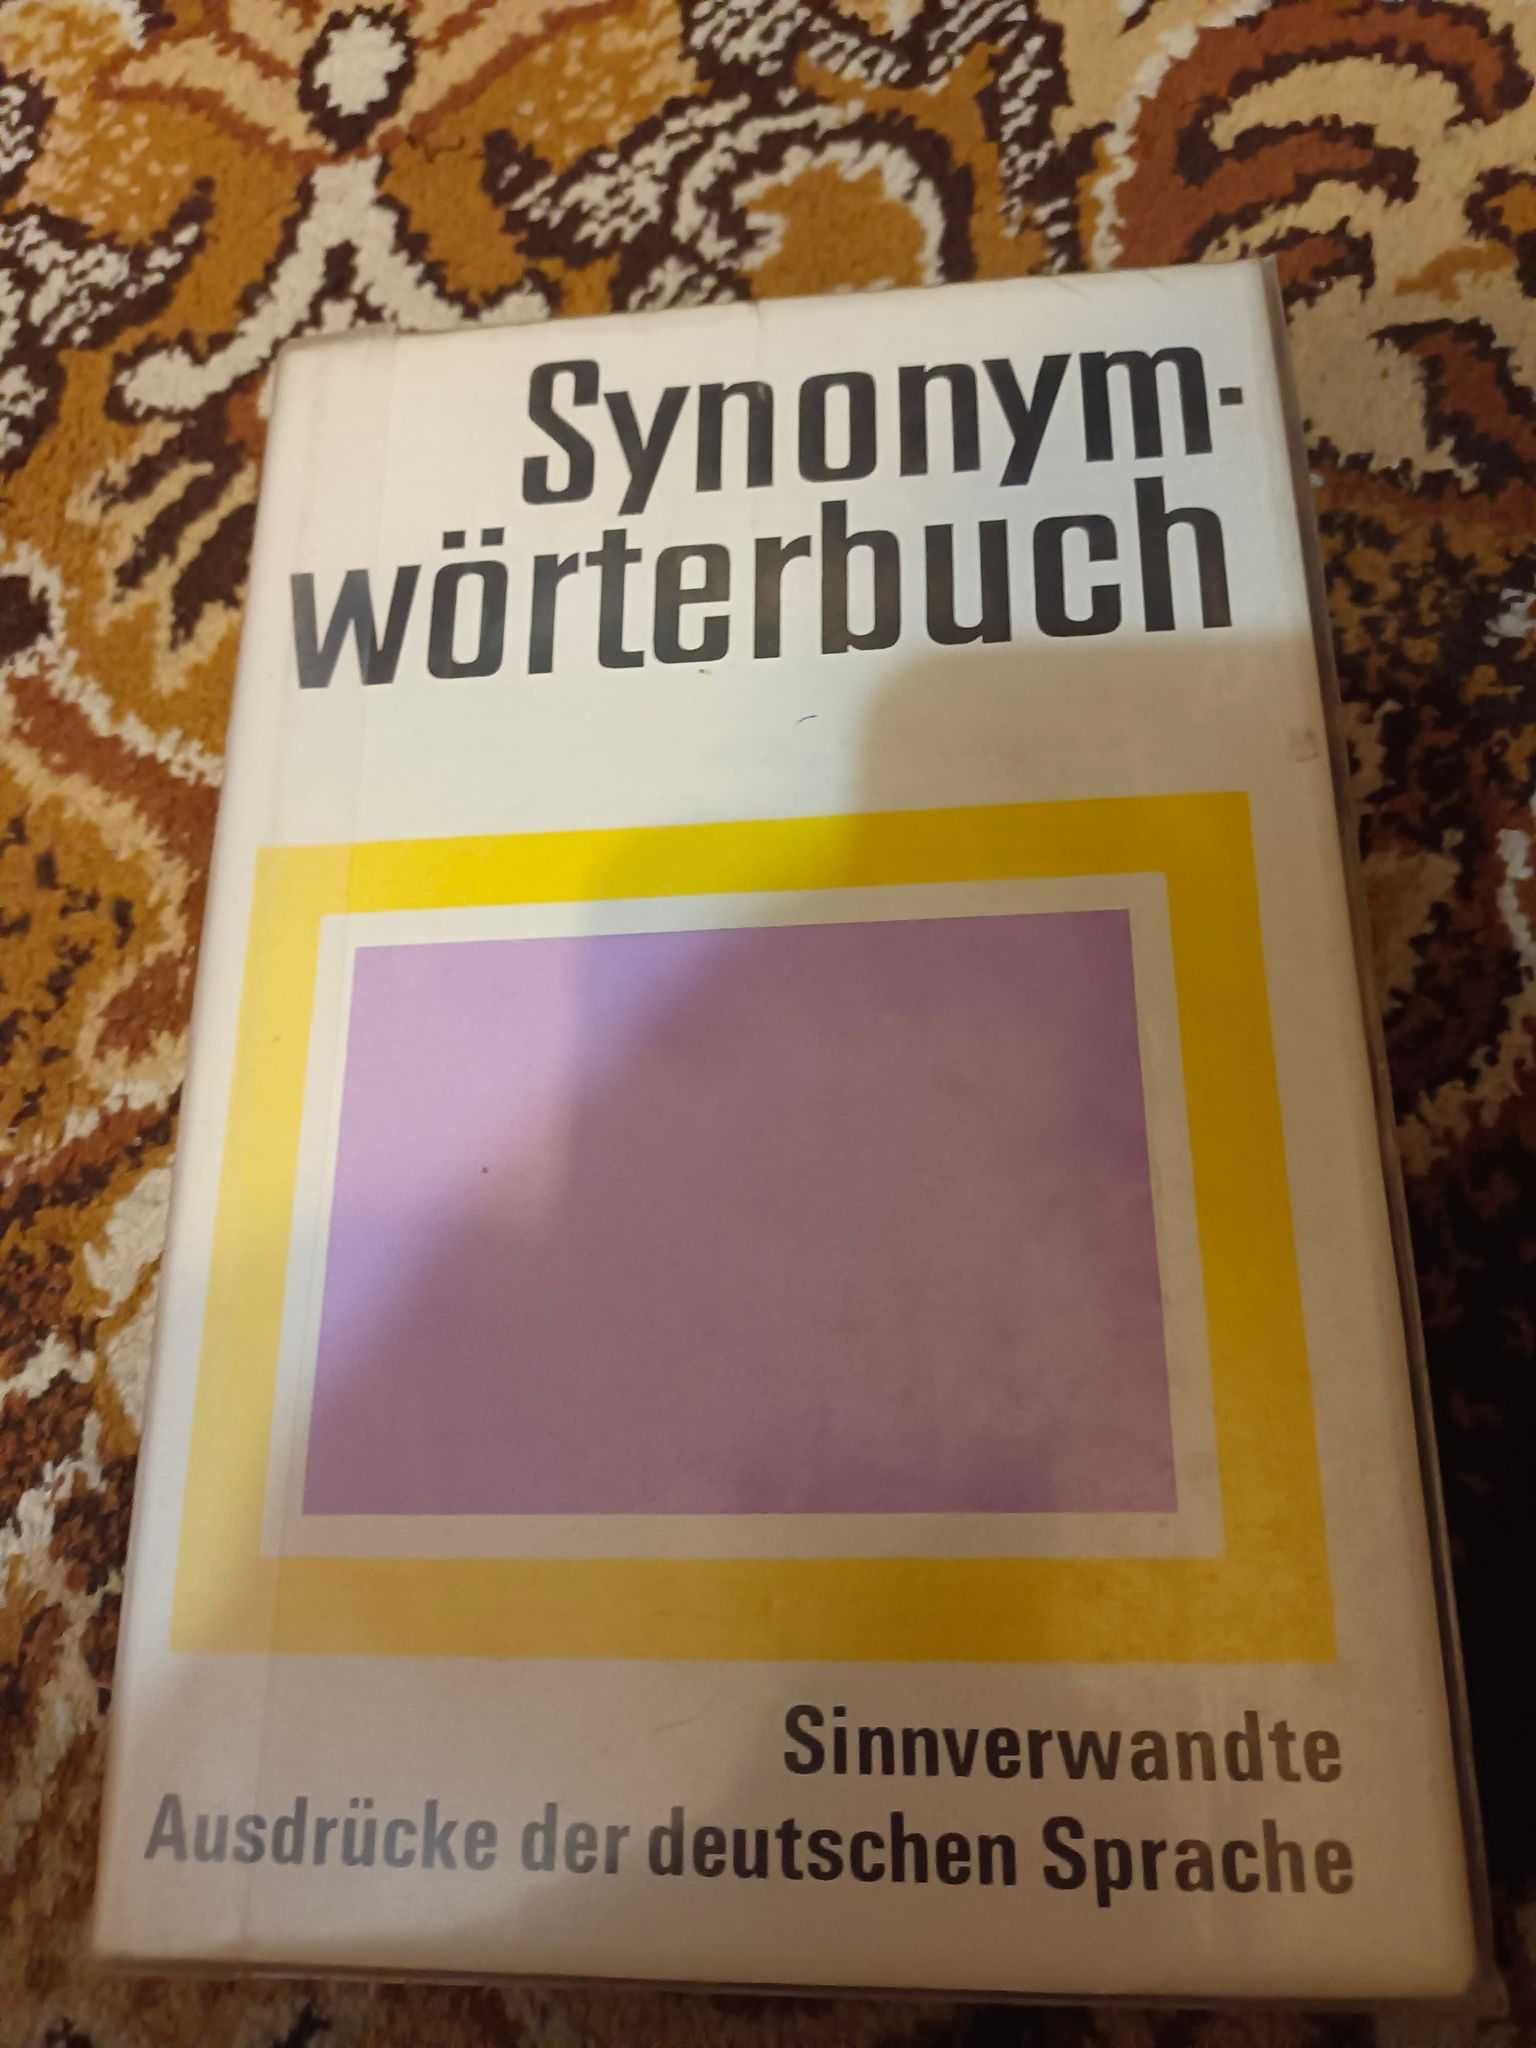 dla germanistow , studentow, książki- unikatowe